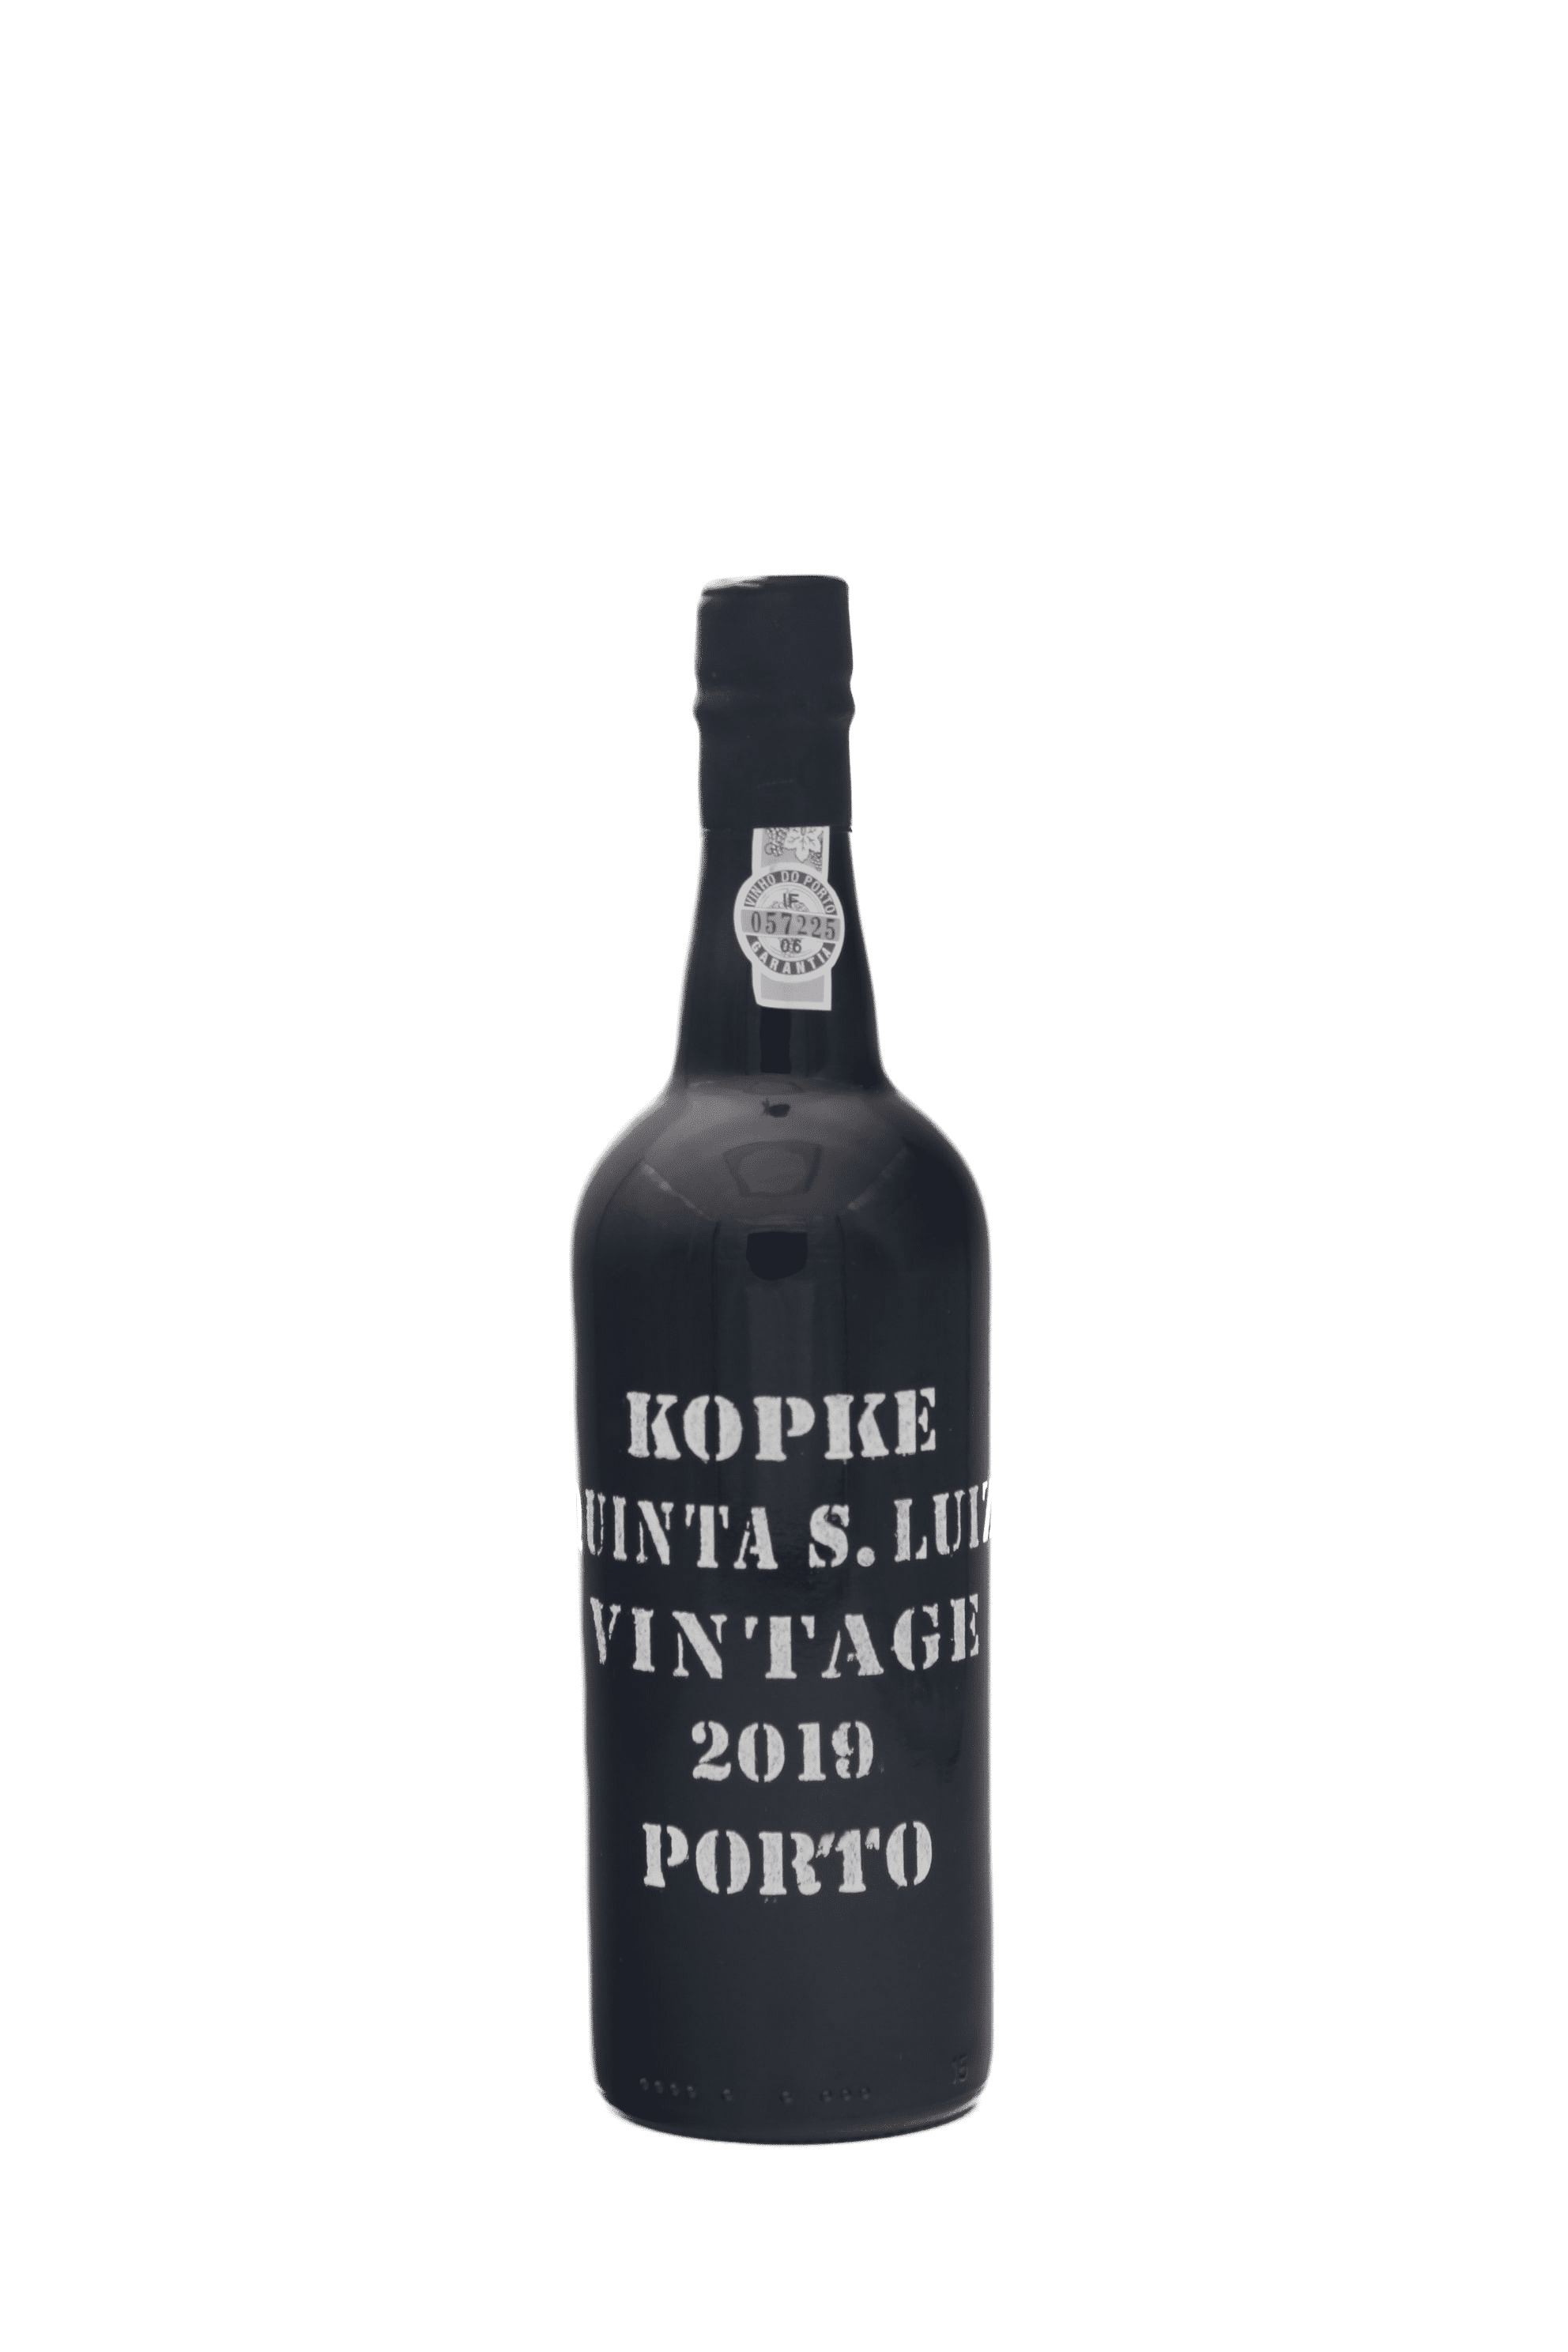 Kopke - Vintage Port Quinta Sao Luiz 2019